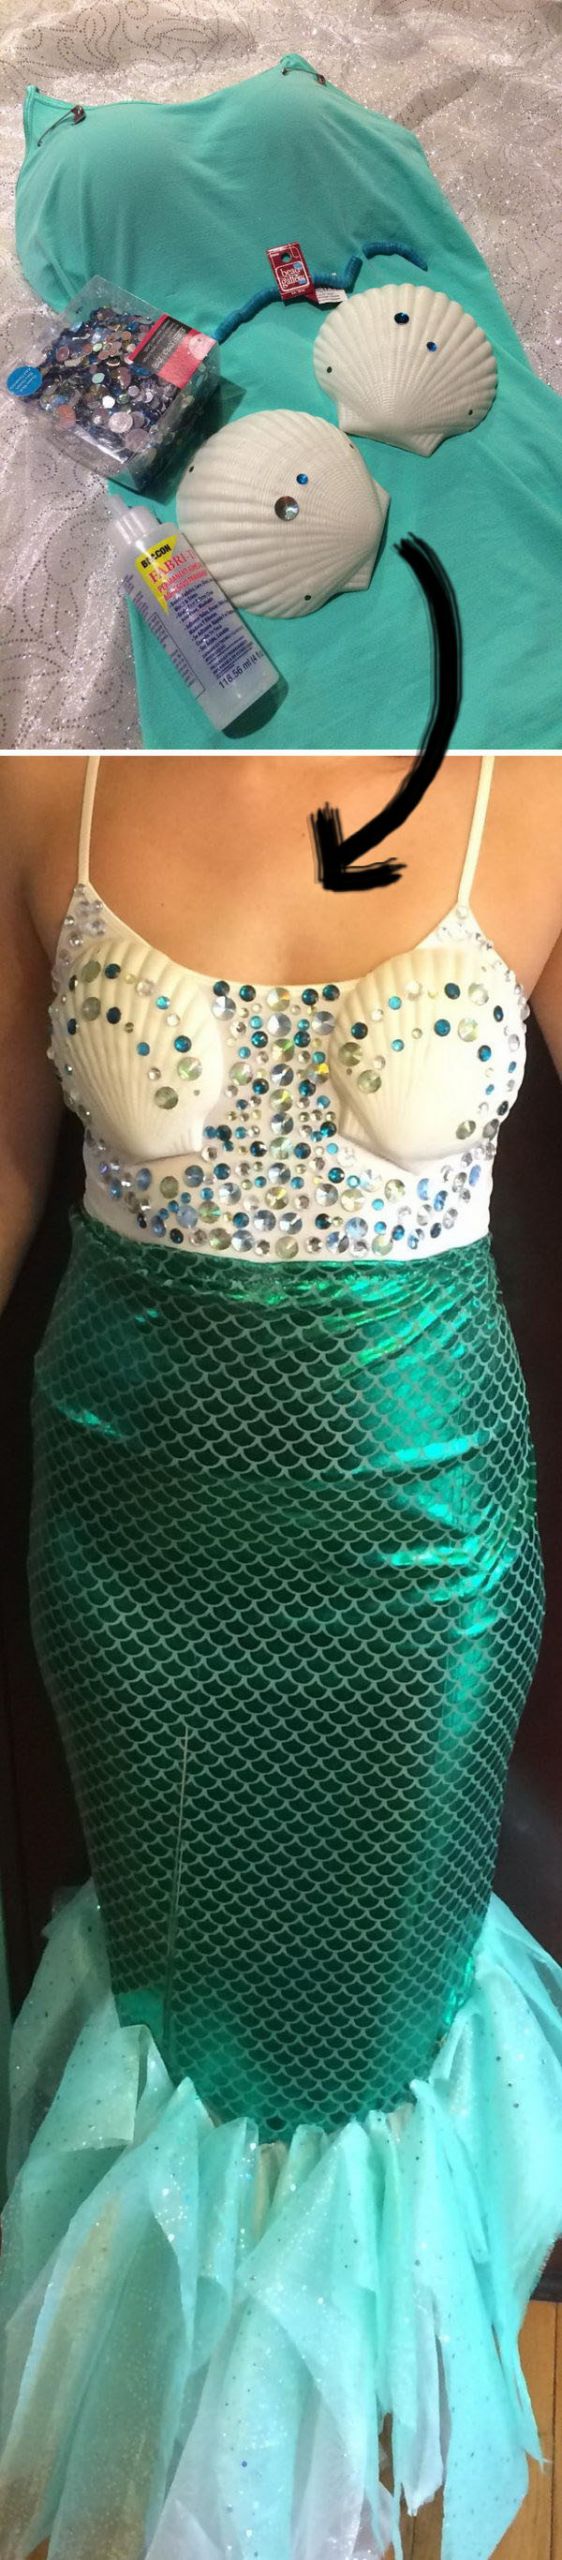 DIY Mermaid Skirt Costume
 25 Mermaid Costumes and DIY Ideas 2017